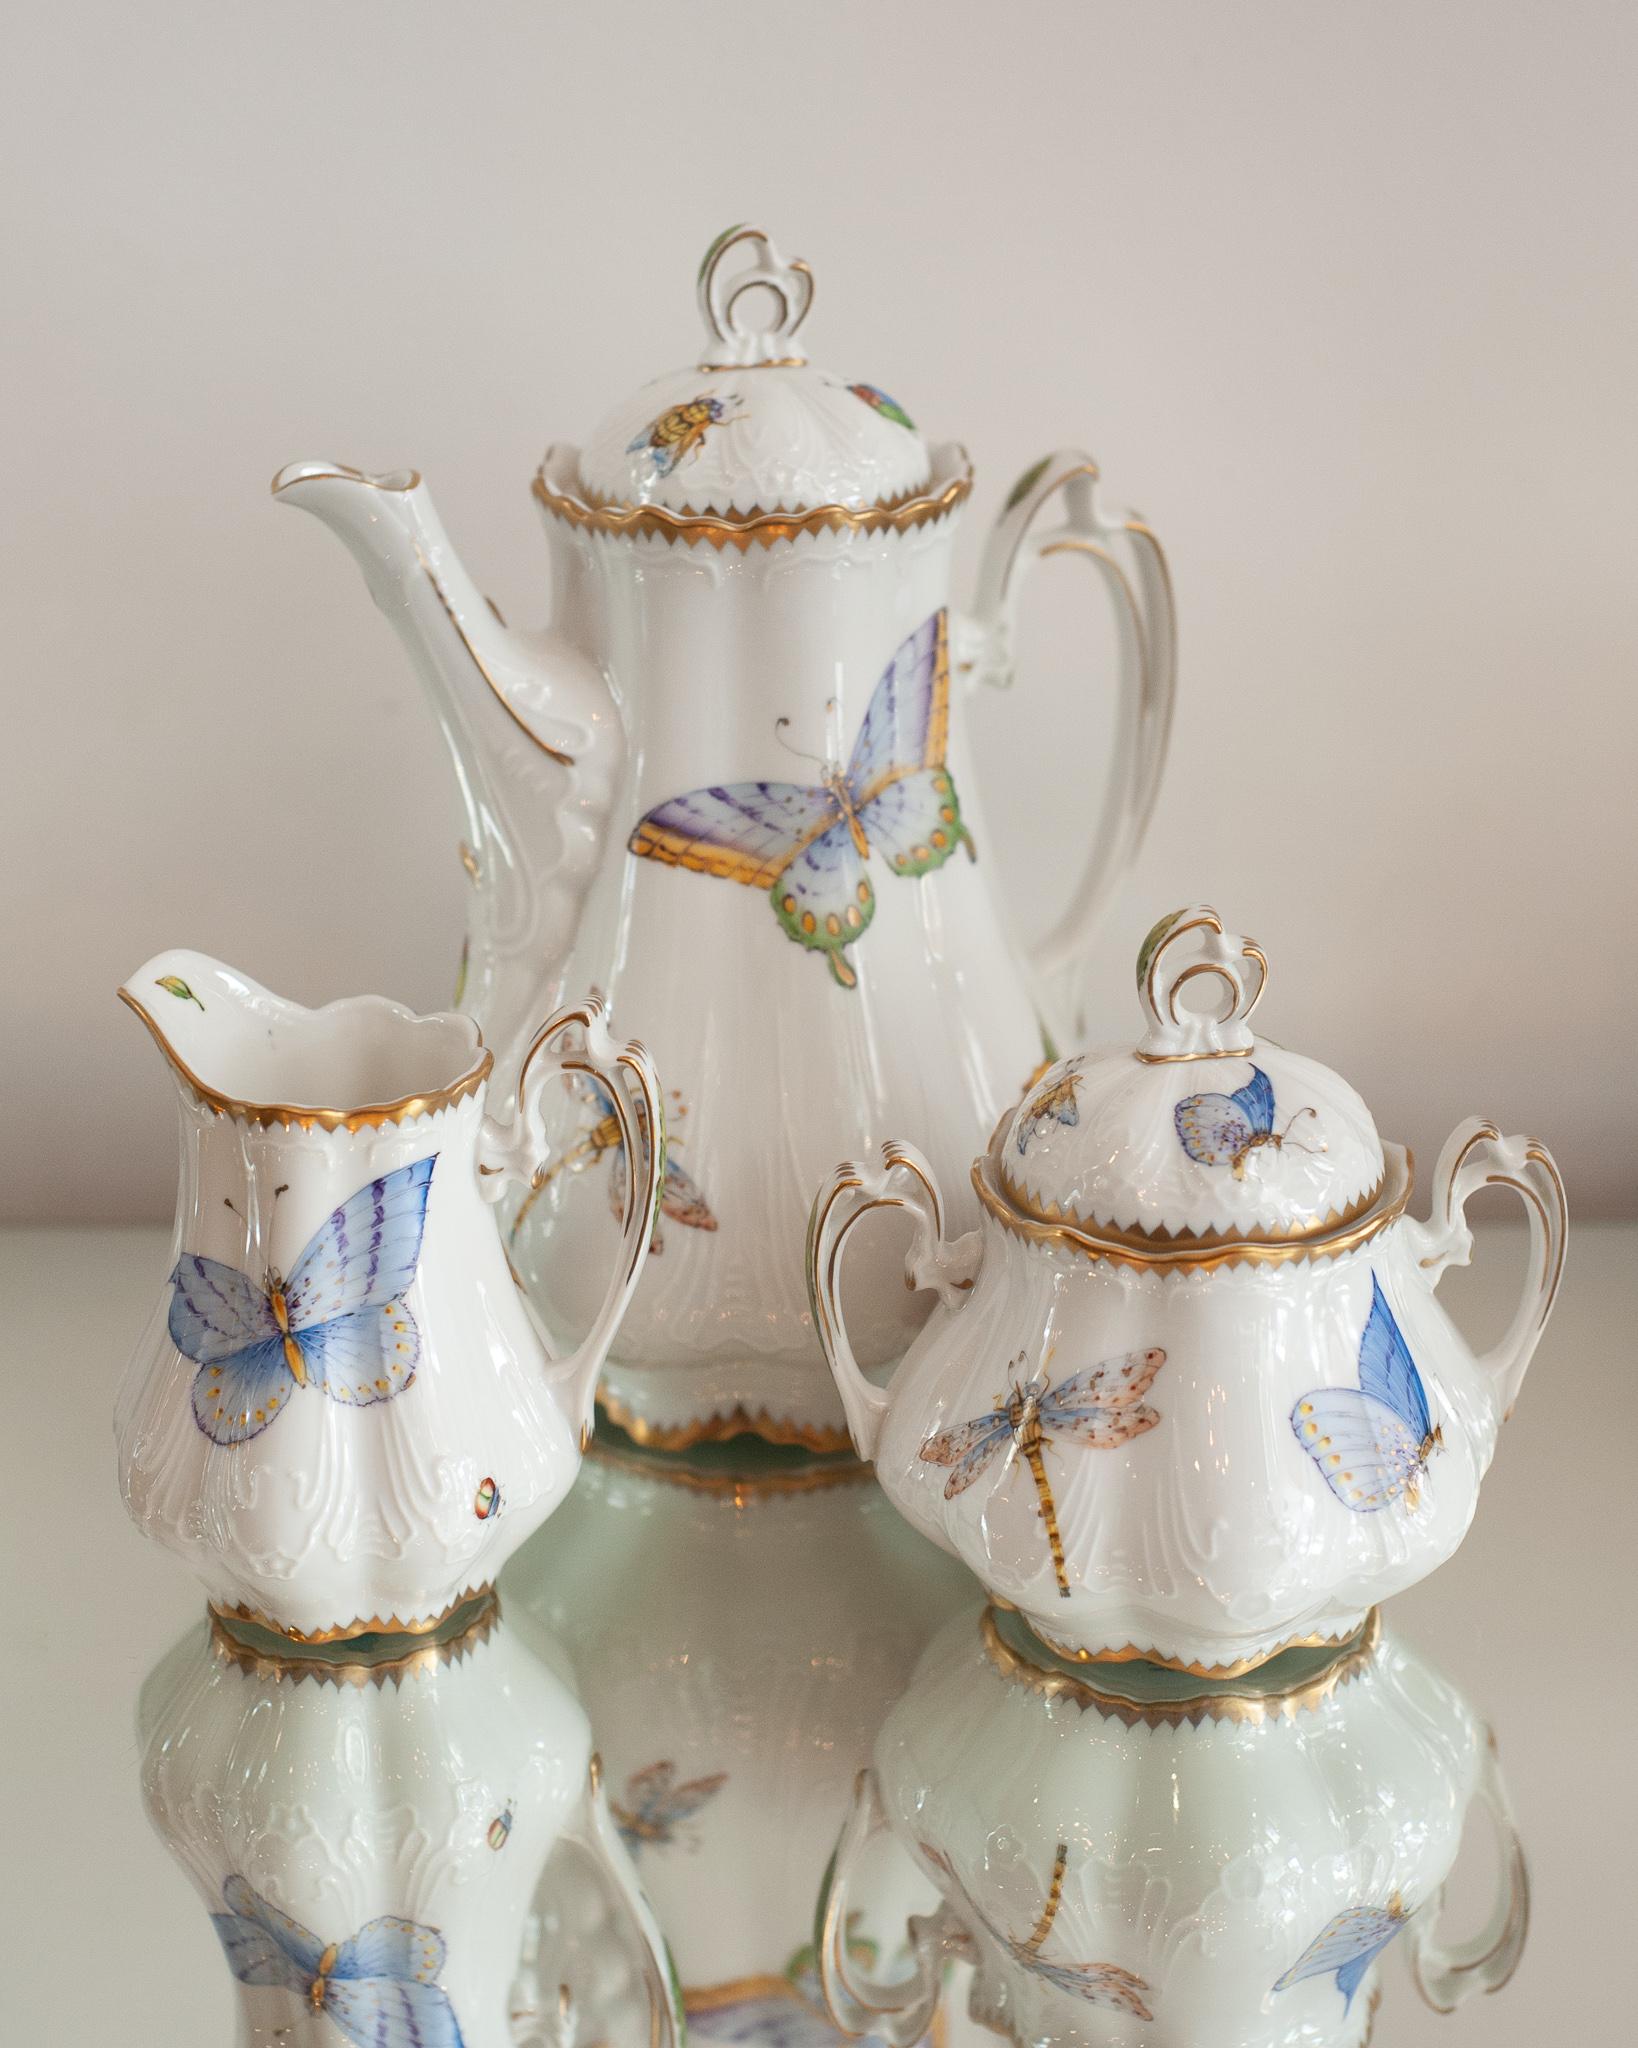 Ein wunderschönes dreiteiliges Kaffee-/Teeset, handbemalt mit Schmetterlingen von Anna Weatherley Designs. Anna Weatherley entwirft und produziert seit 30 Jahren feines botanisches handbemaltes Porzellan in Ungarn.

Teekanne misst 10